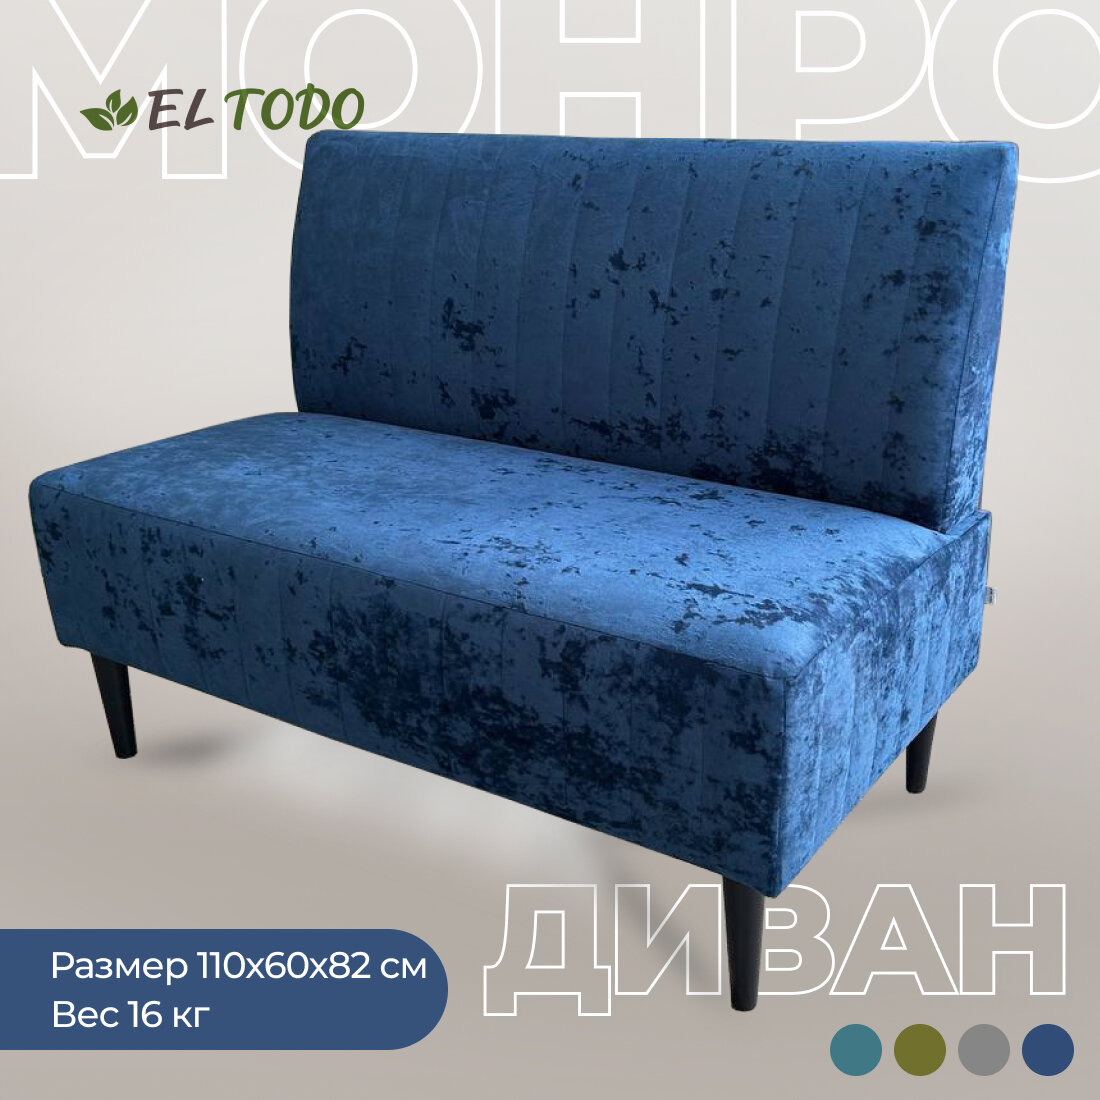 Прямой диван EL TODO монро, на кухню, на балкон, в прихожую, велюр, синий,110х60х82 см